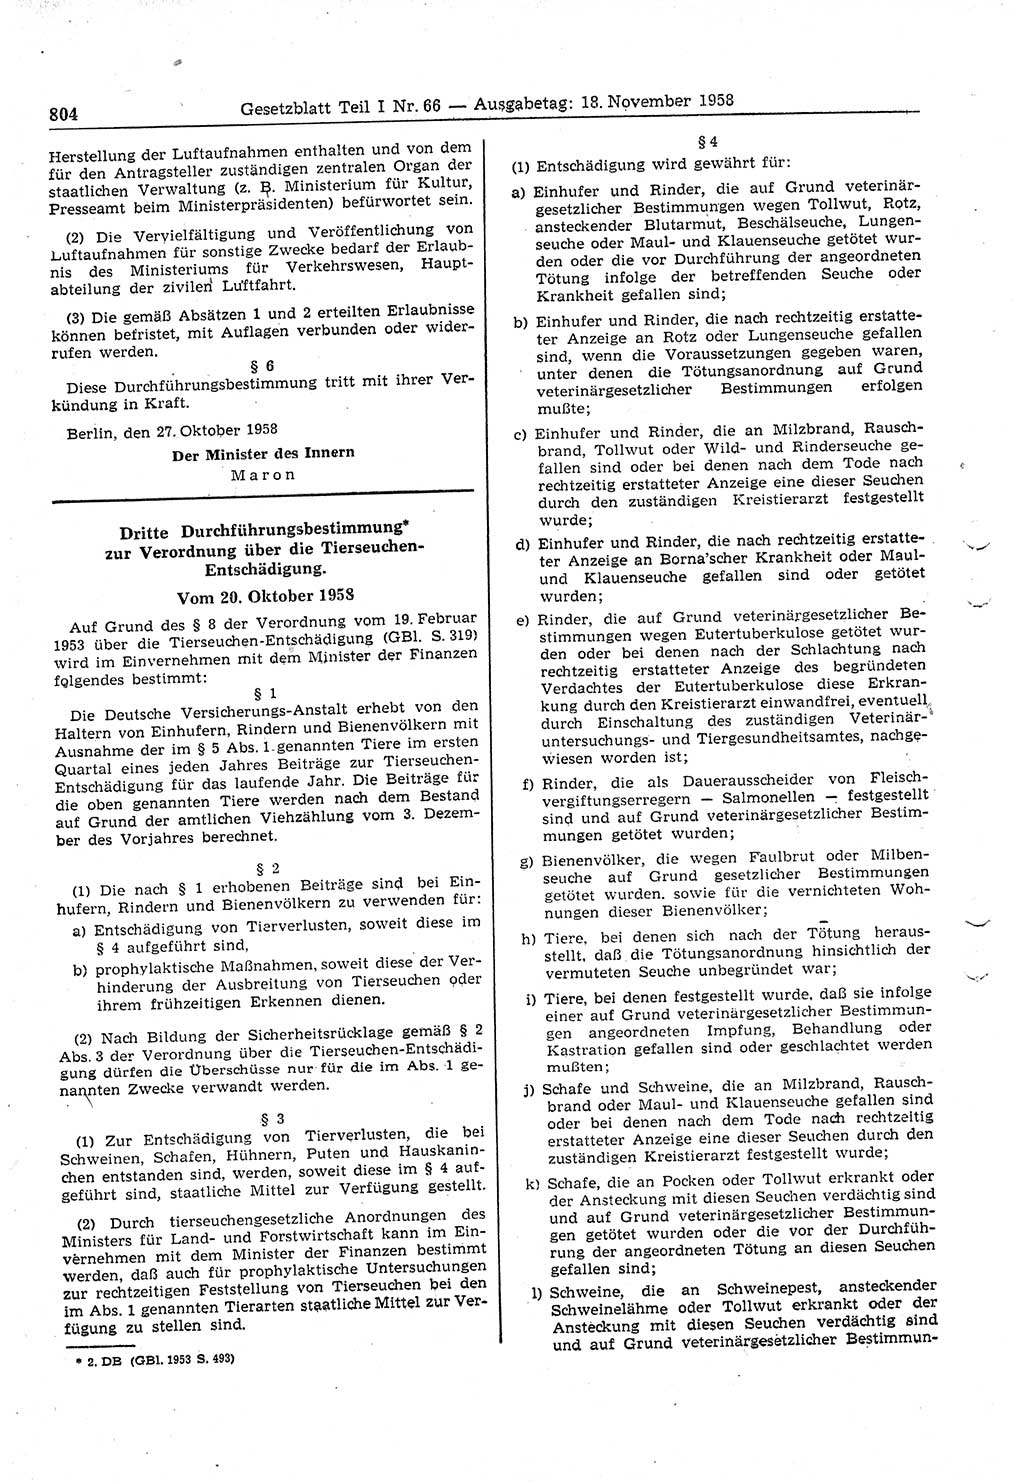 Gesetzblatt (GBl.) der Deutschen Demokratischen Republik (DDR) Teil Ⅰ 1958, Seite 804 (GBl. DDR Ⅰ 1958, S. 804)